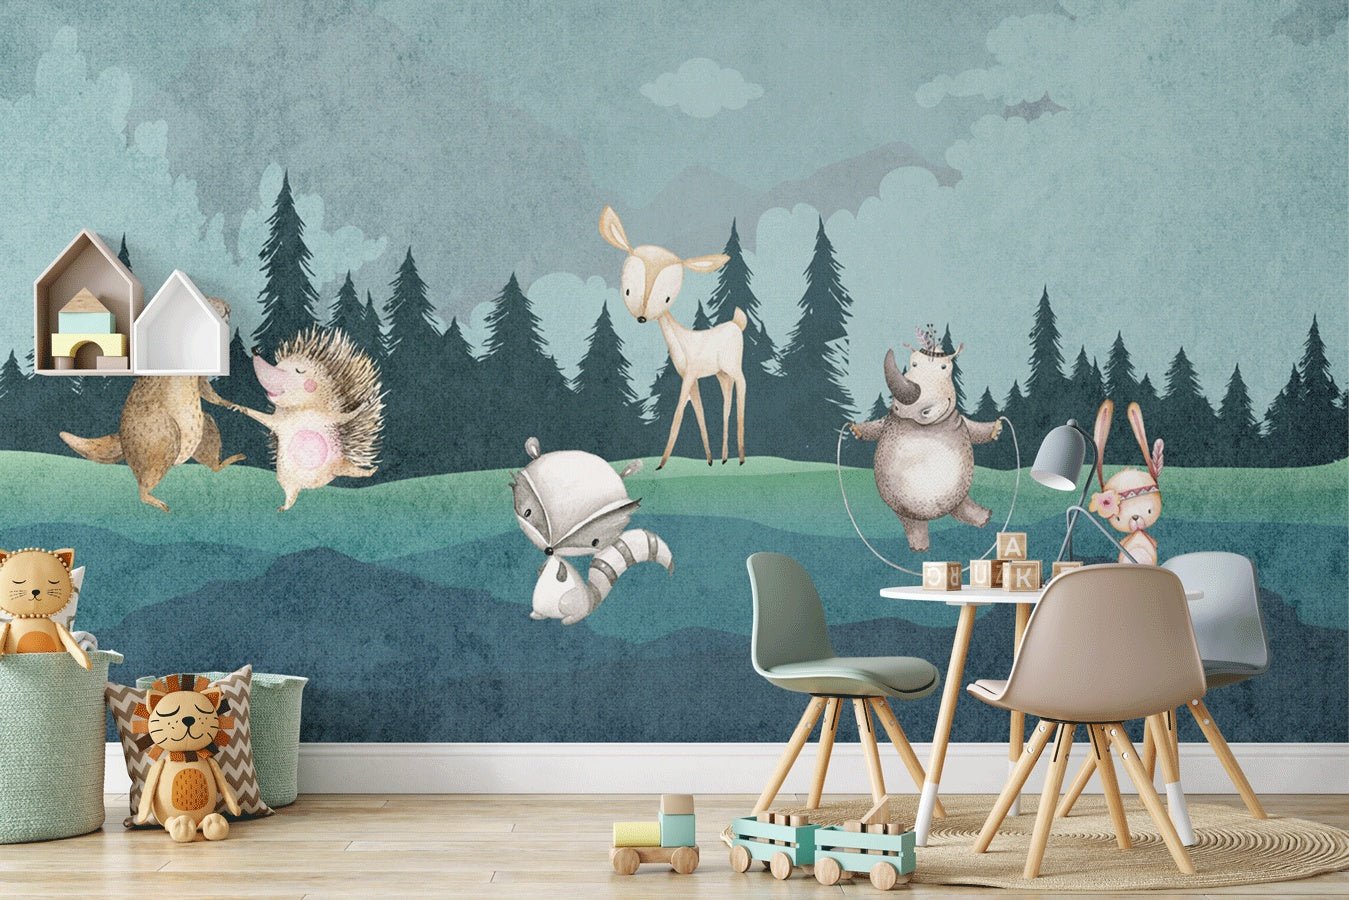 Affiche dessins animaux de la foret scandinave decoration chambre